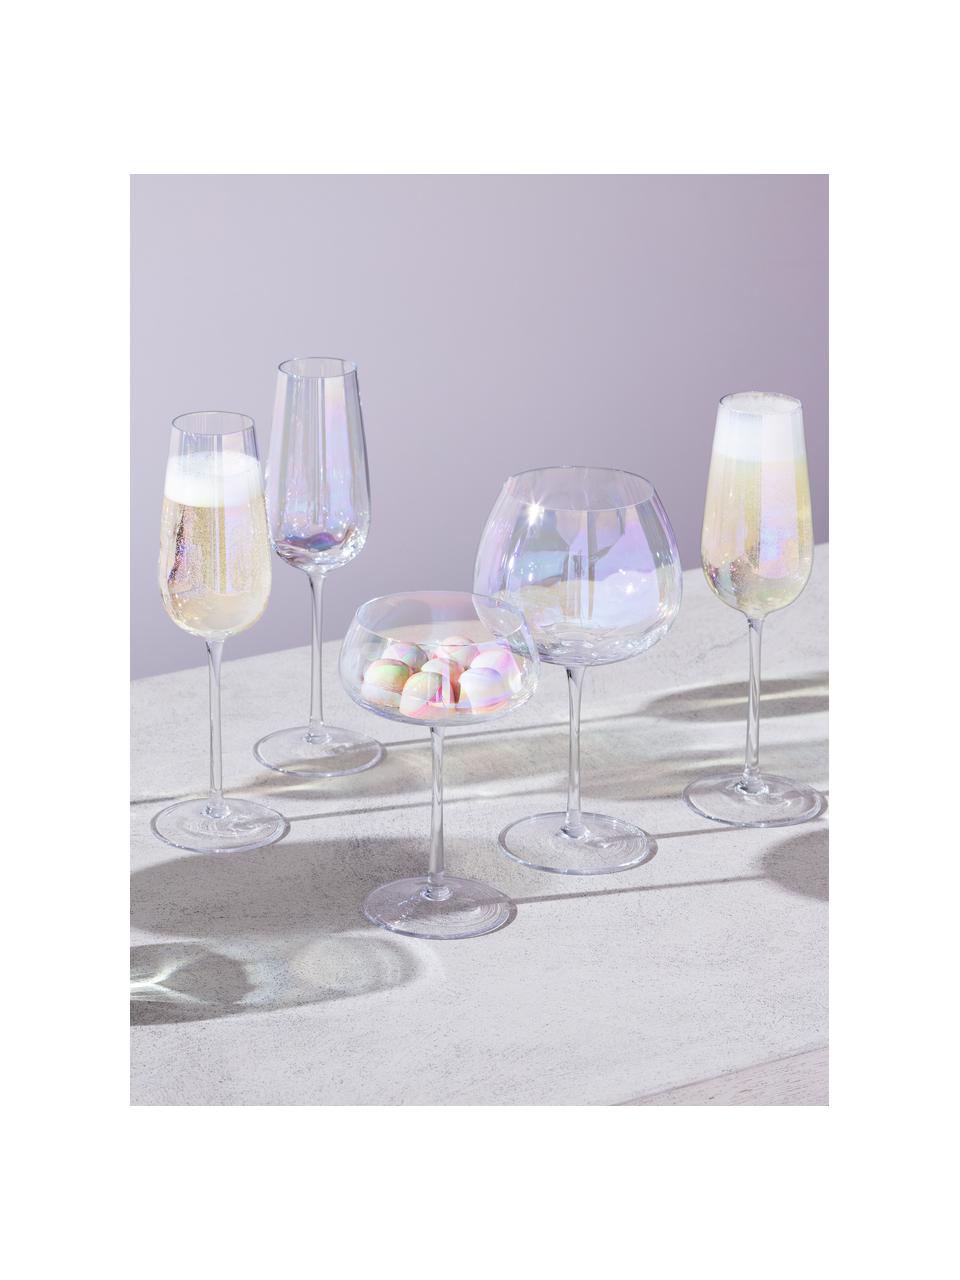 Ručně foukané sklenice na šampaňské se třpytivým perleťovým leskem Pearl, 2 ks, Sklo, Transparentní, opalizující, Ø 11 cm, V 16 cm, 300 ml